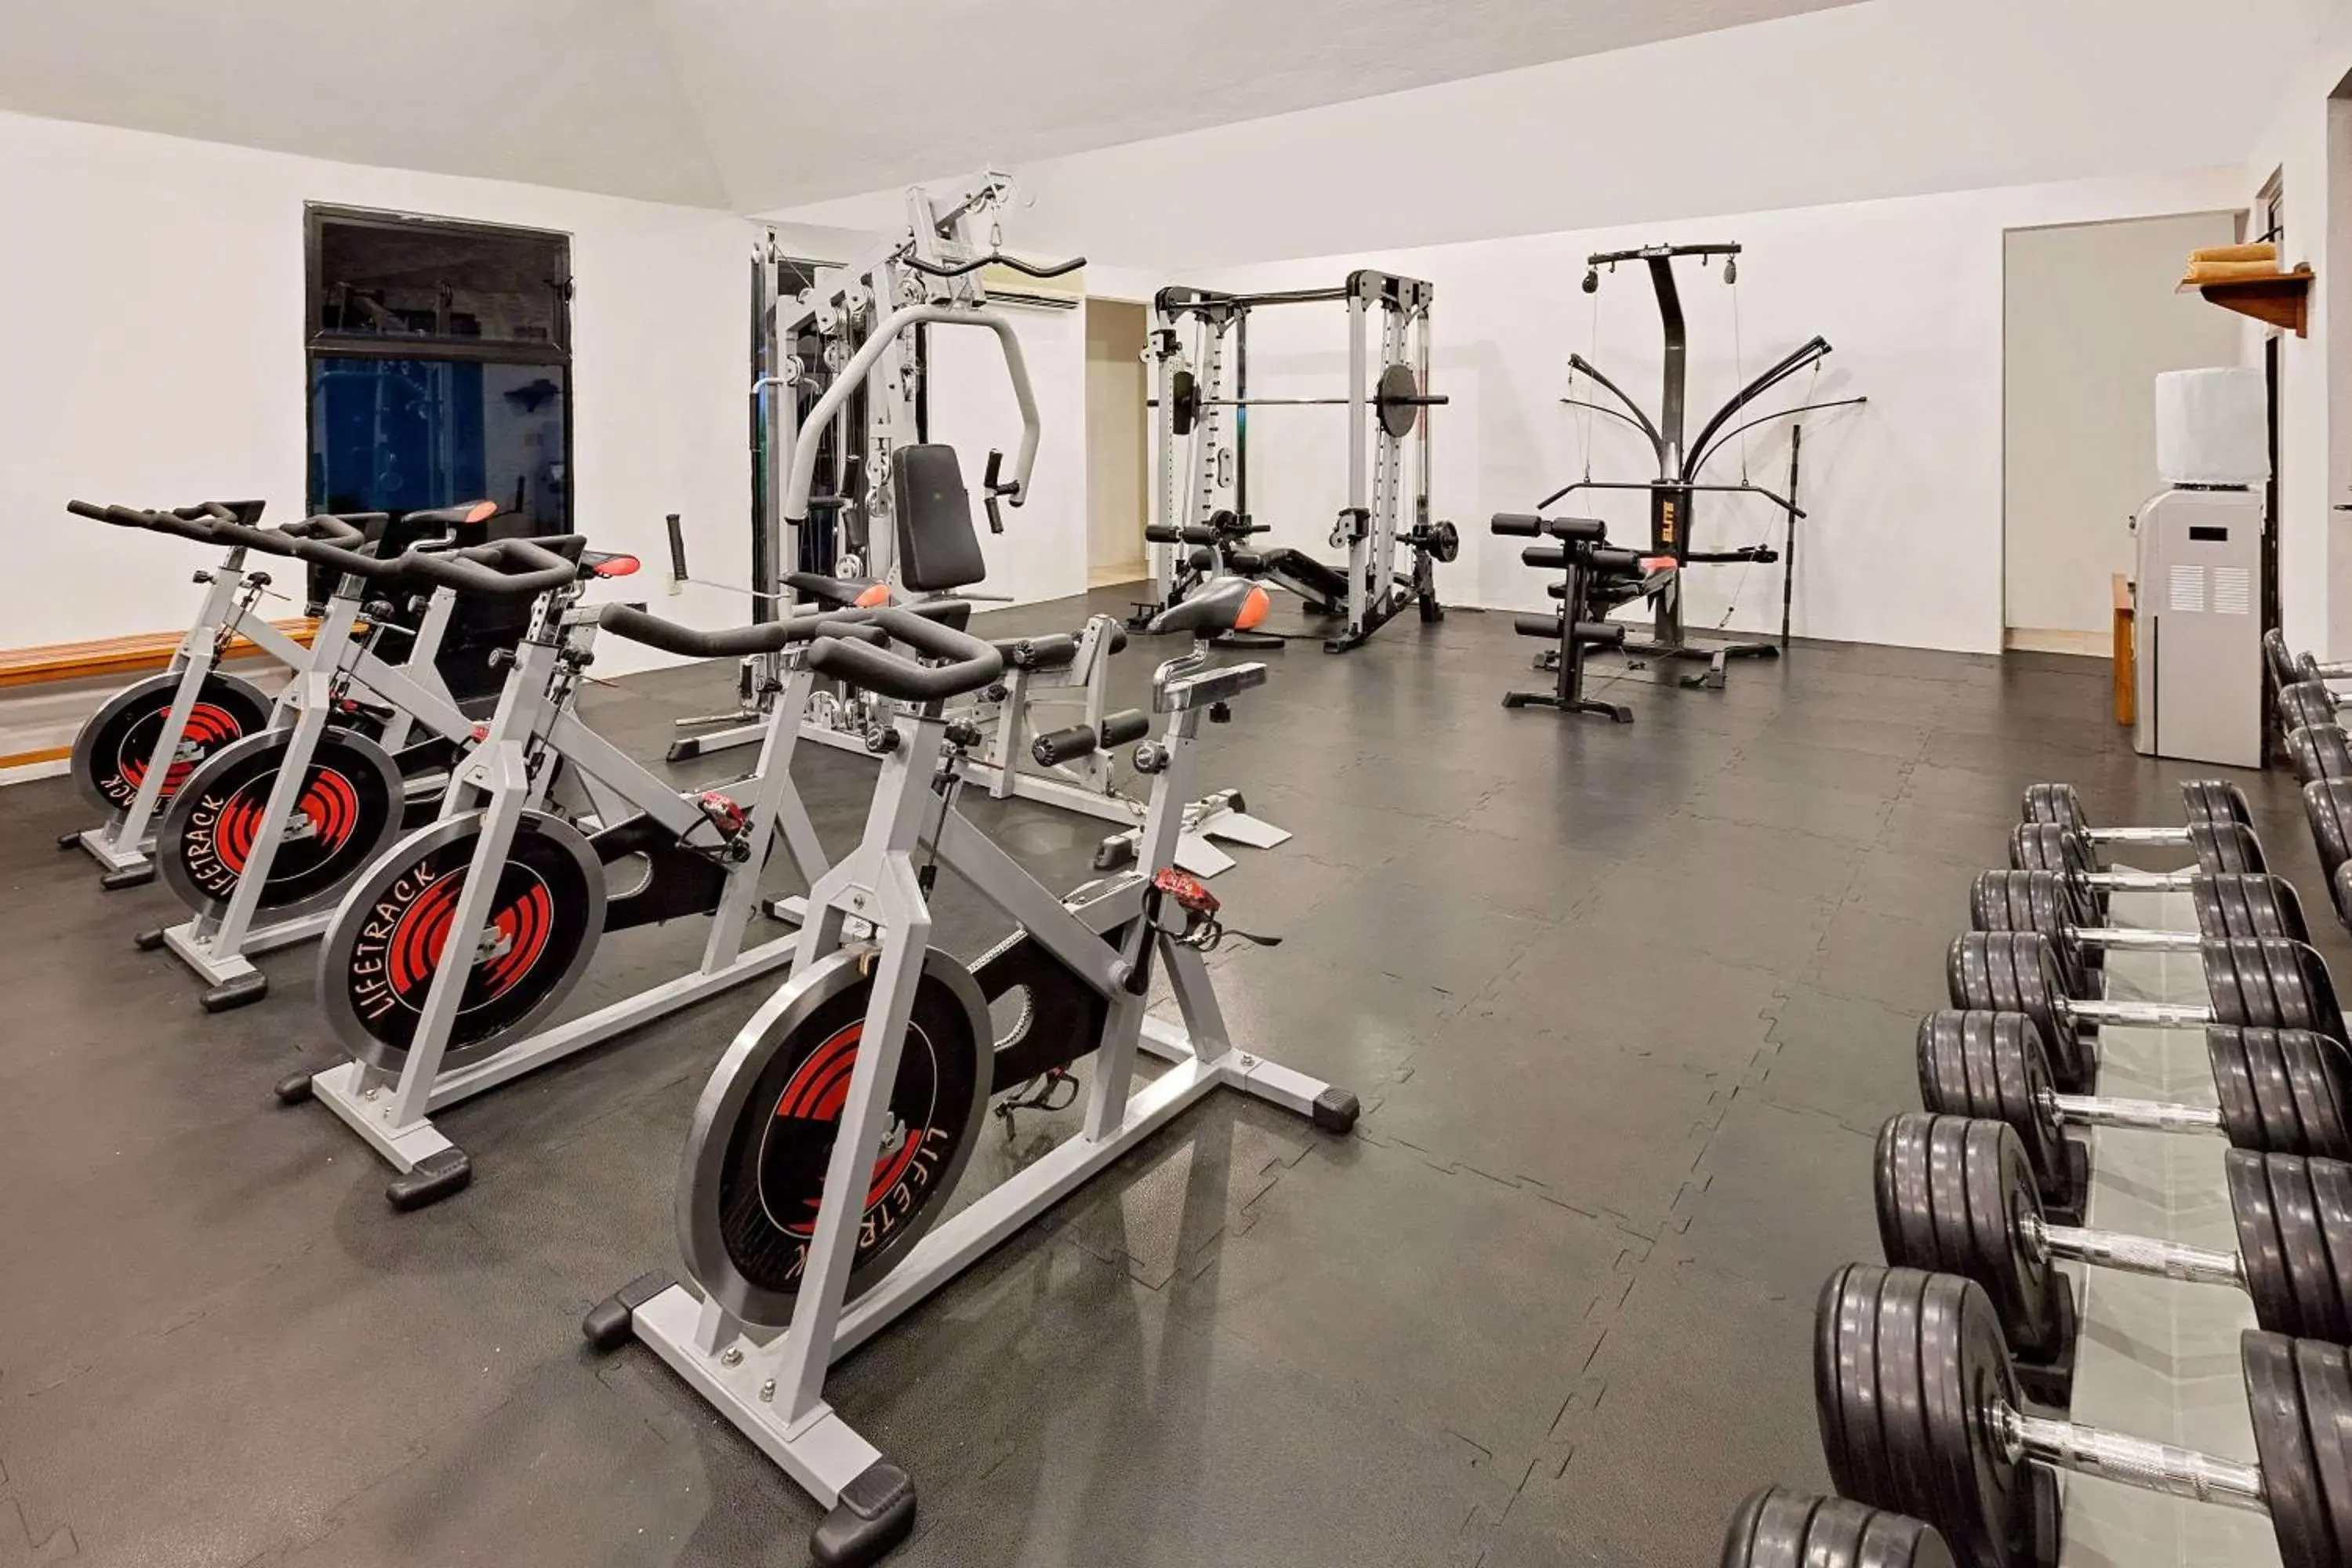 Fitness centre/facilities, Fitness Center/Facilities in Gaviana Resort